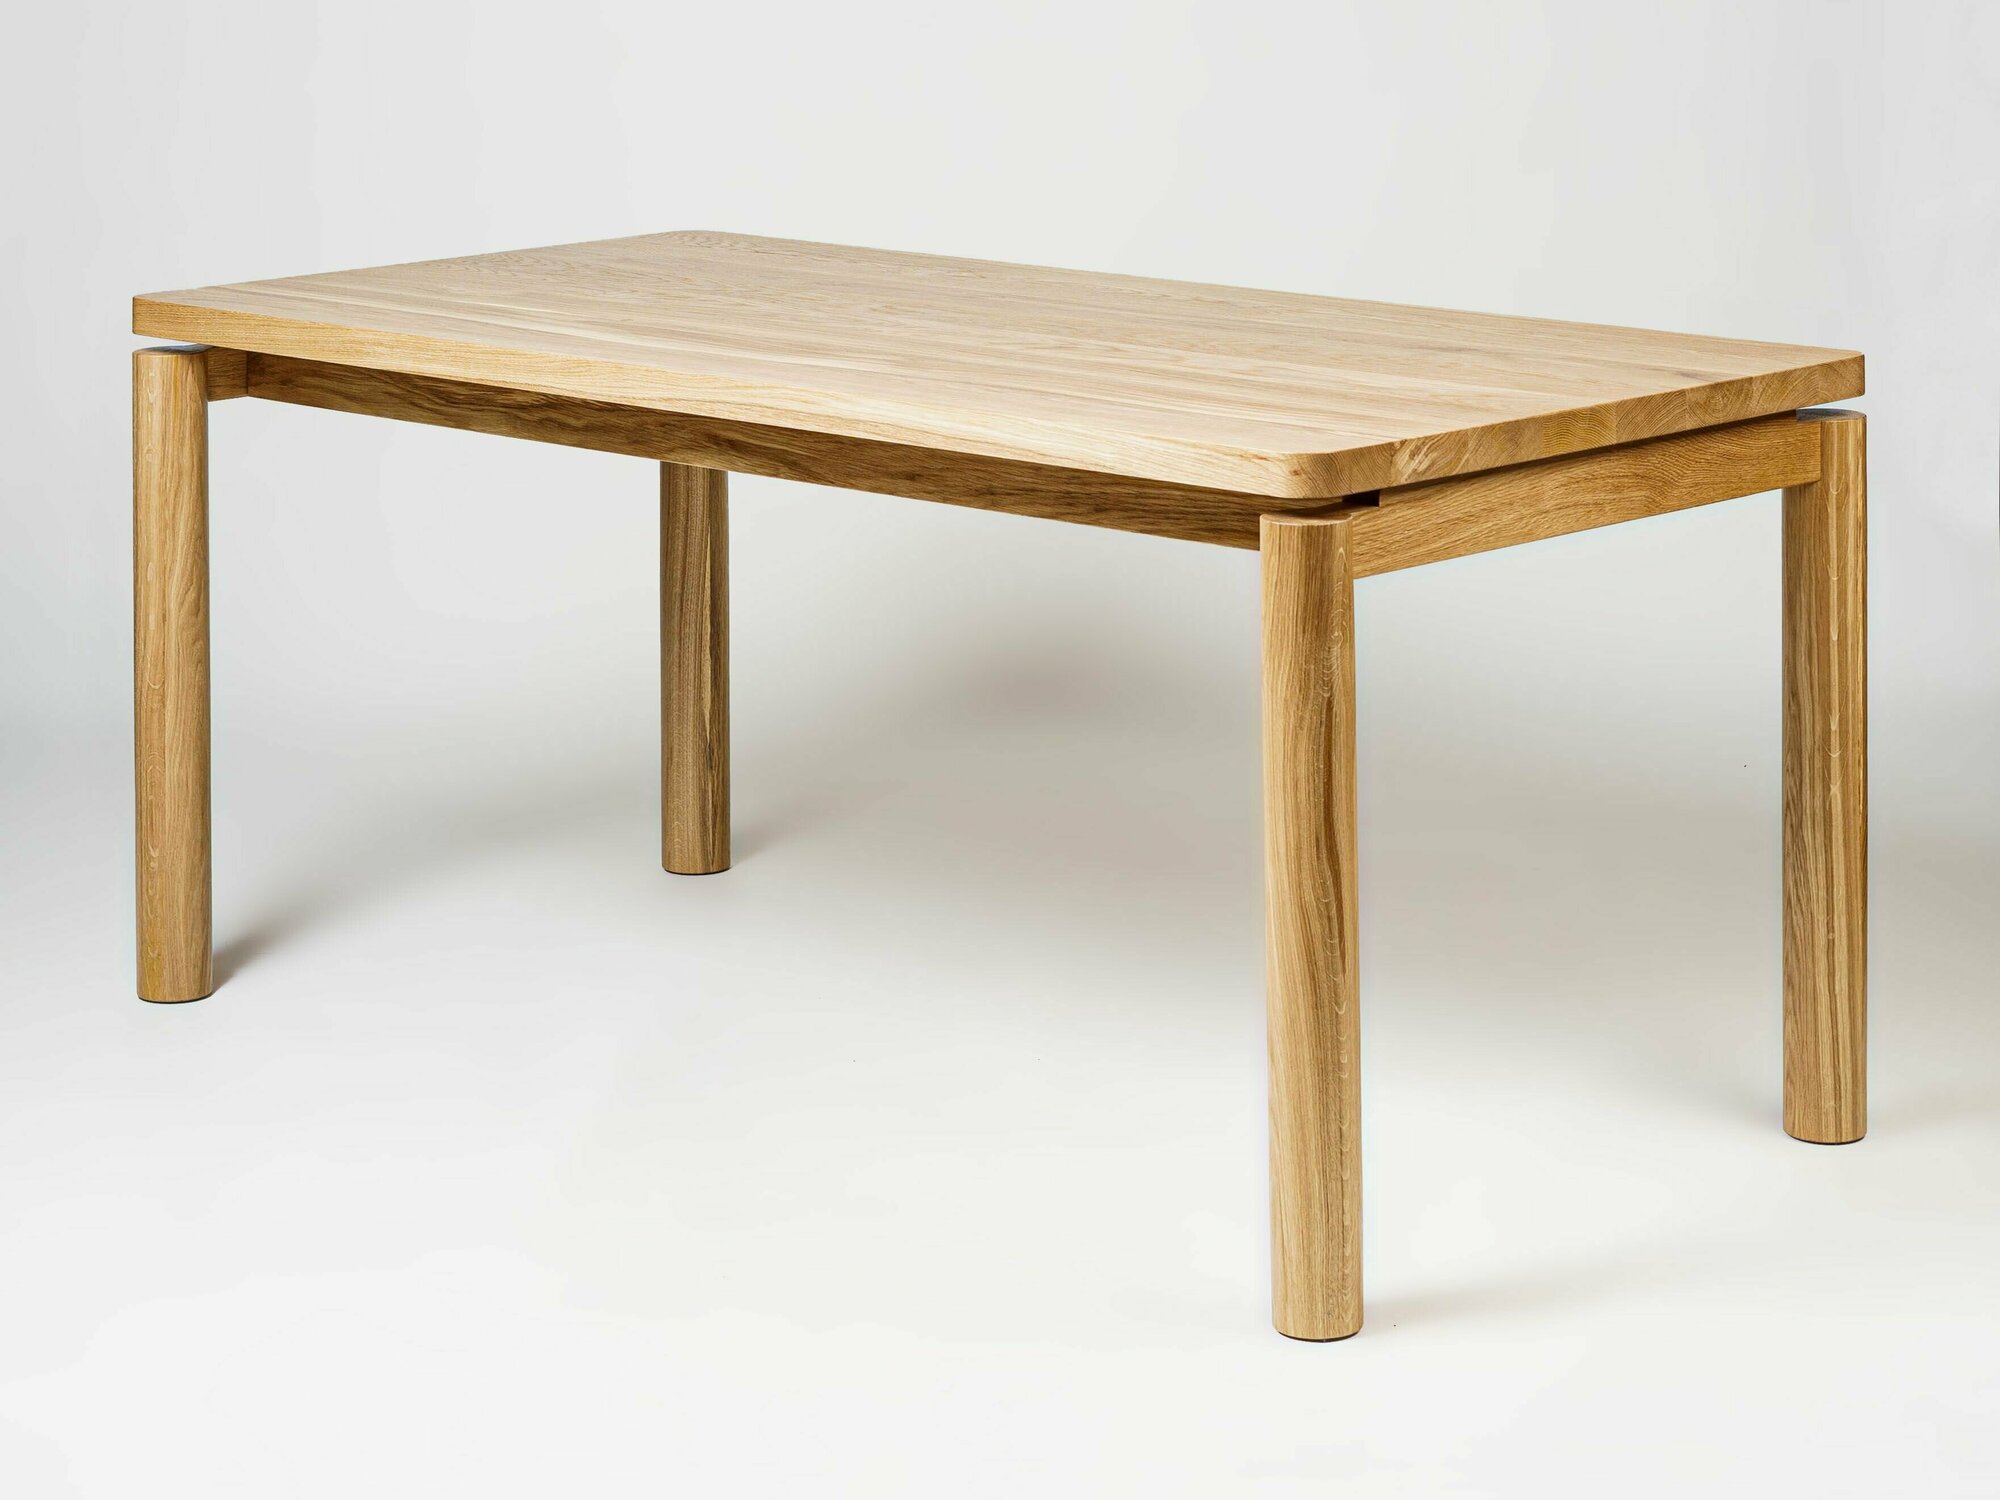 Обеденный стол, Eichel Gallery, dt-10, 200x100x75 см, массив дуба